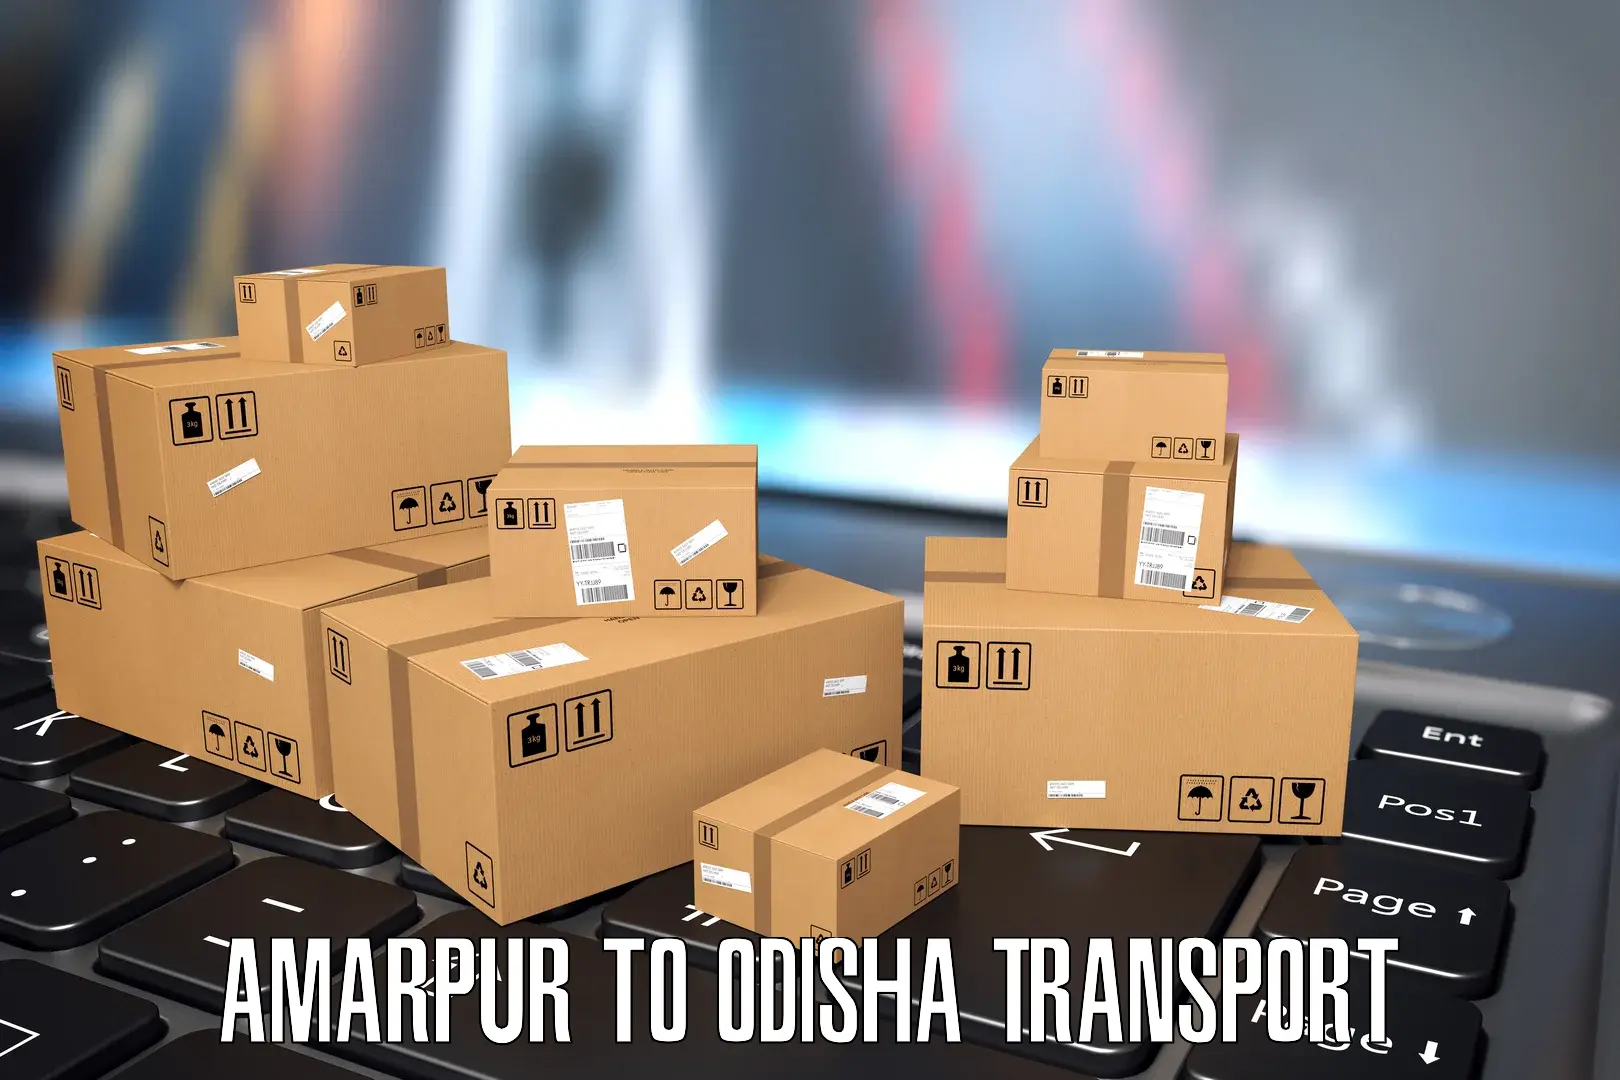 Parcel transport services Amarpur to Chandikhol